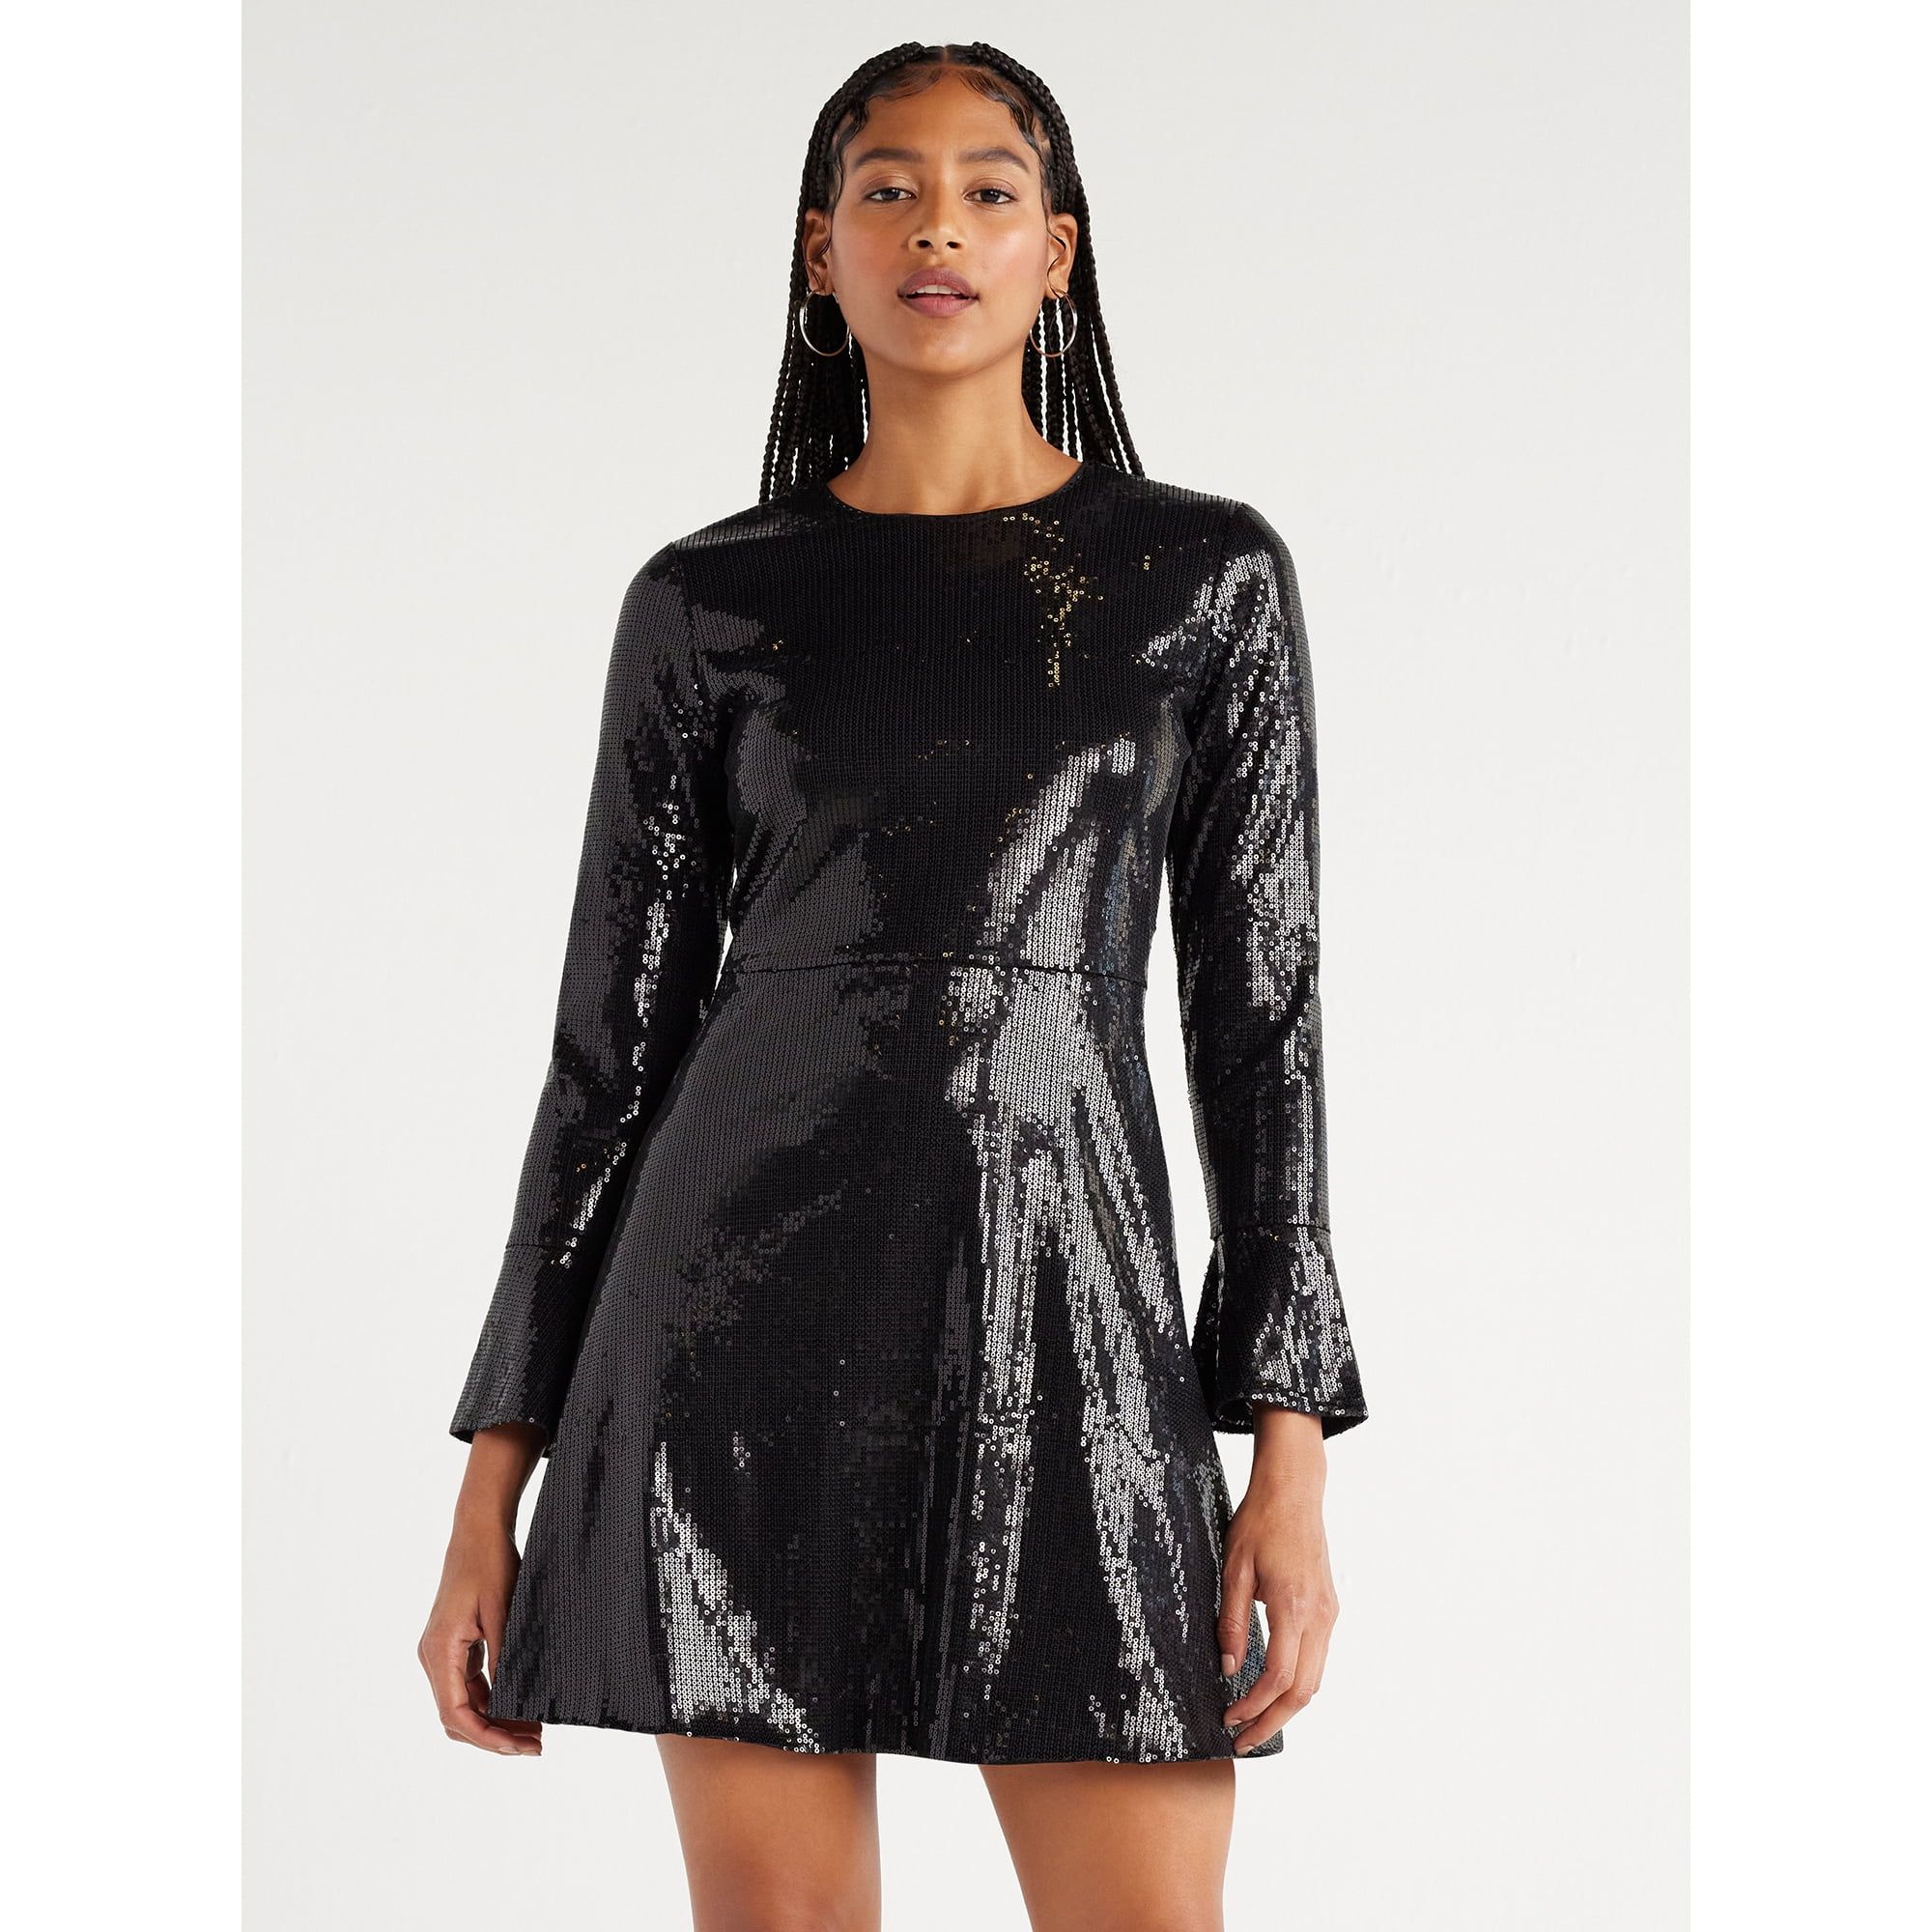 Scoop Women’s Sequin Dress with Slit Sleeves, Sizes XS-XXL | Walmart (US)